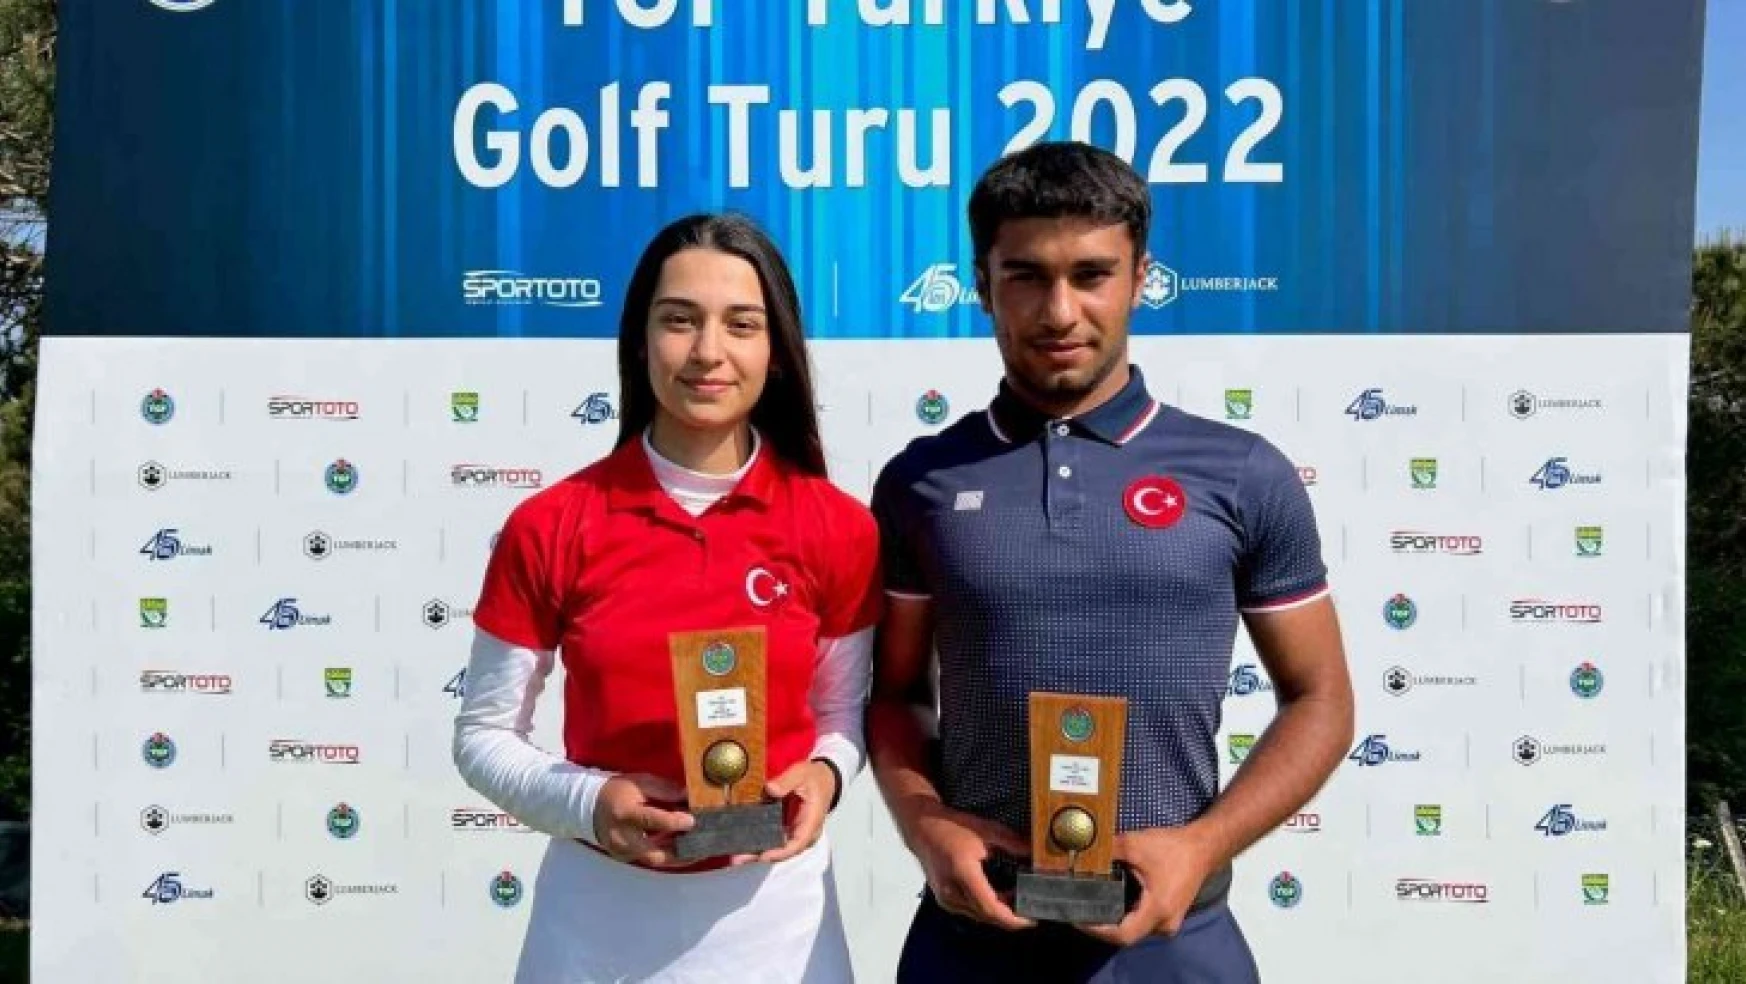 2022 TGF Türkiye Golf Turu Şampiyonları İbrahim Tarık Aslan ve İrem Demir